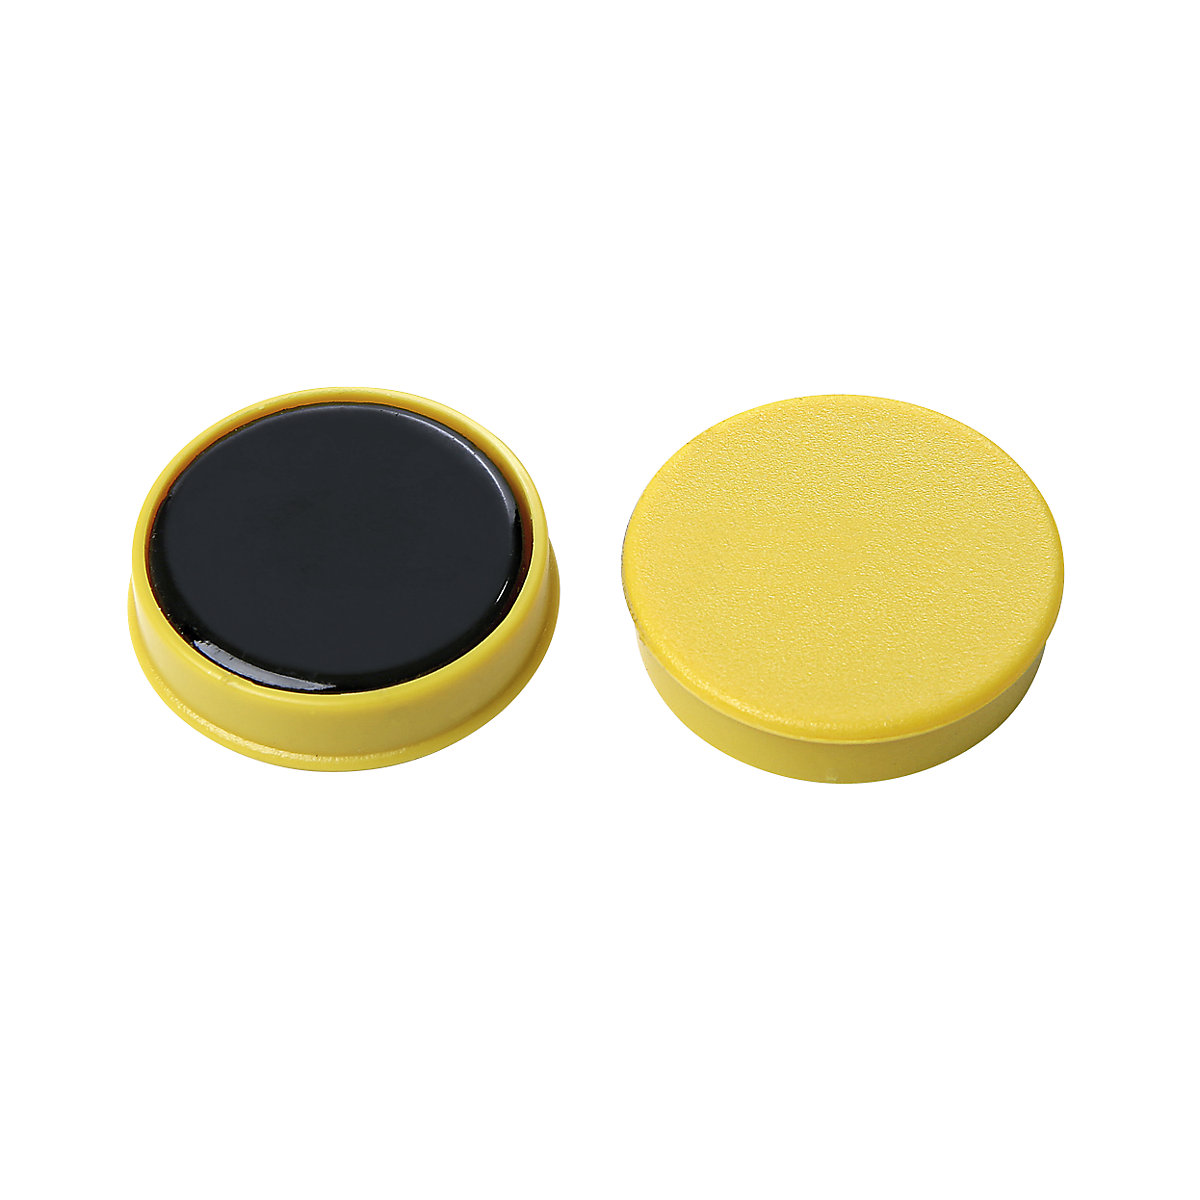 Ronde magneet, kunststof – eurokraft basic, verschillende kleuren: blauw, geel en rood, Ø 20 mm, VE = 72 stuks-8